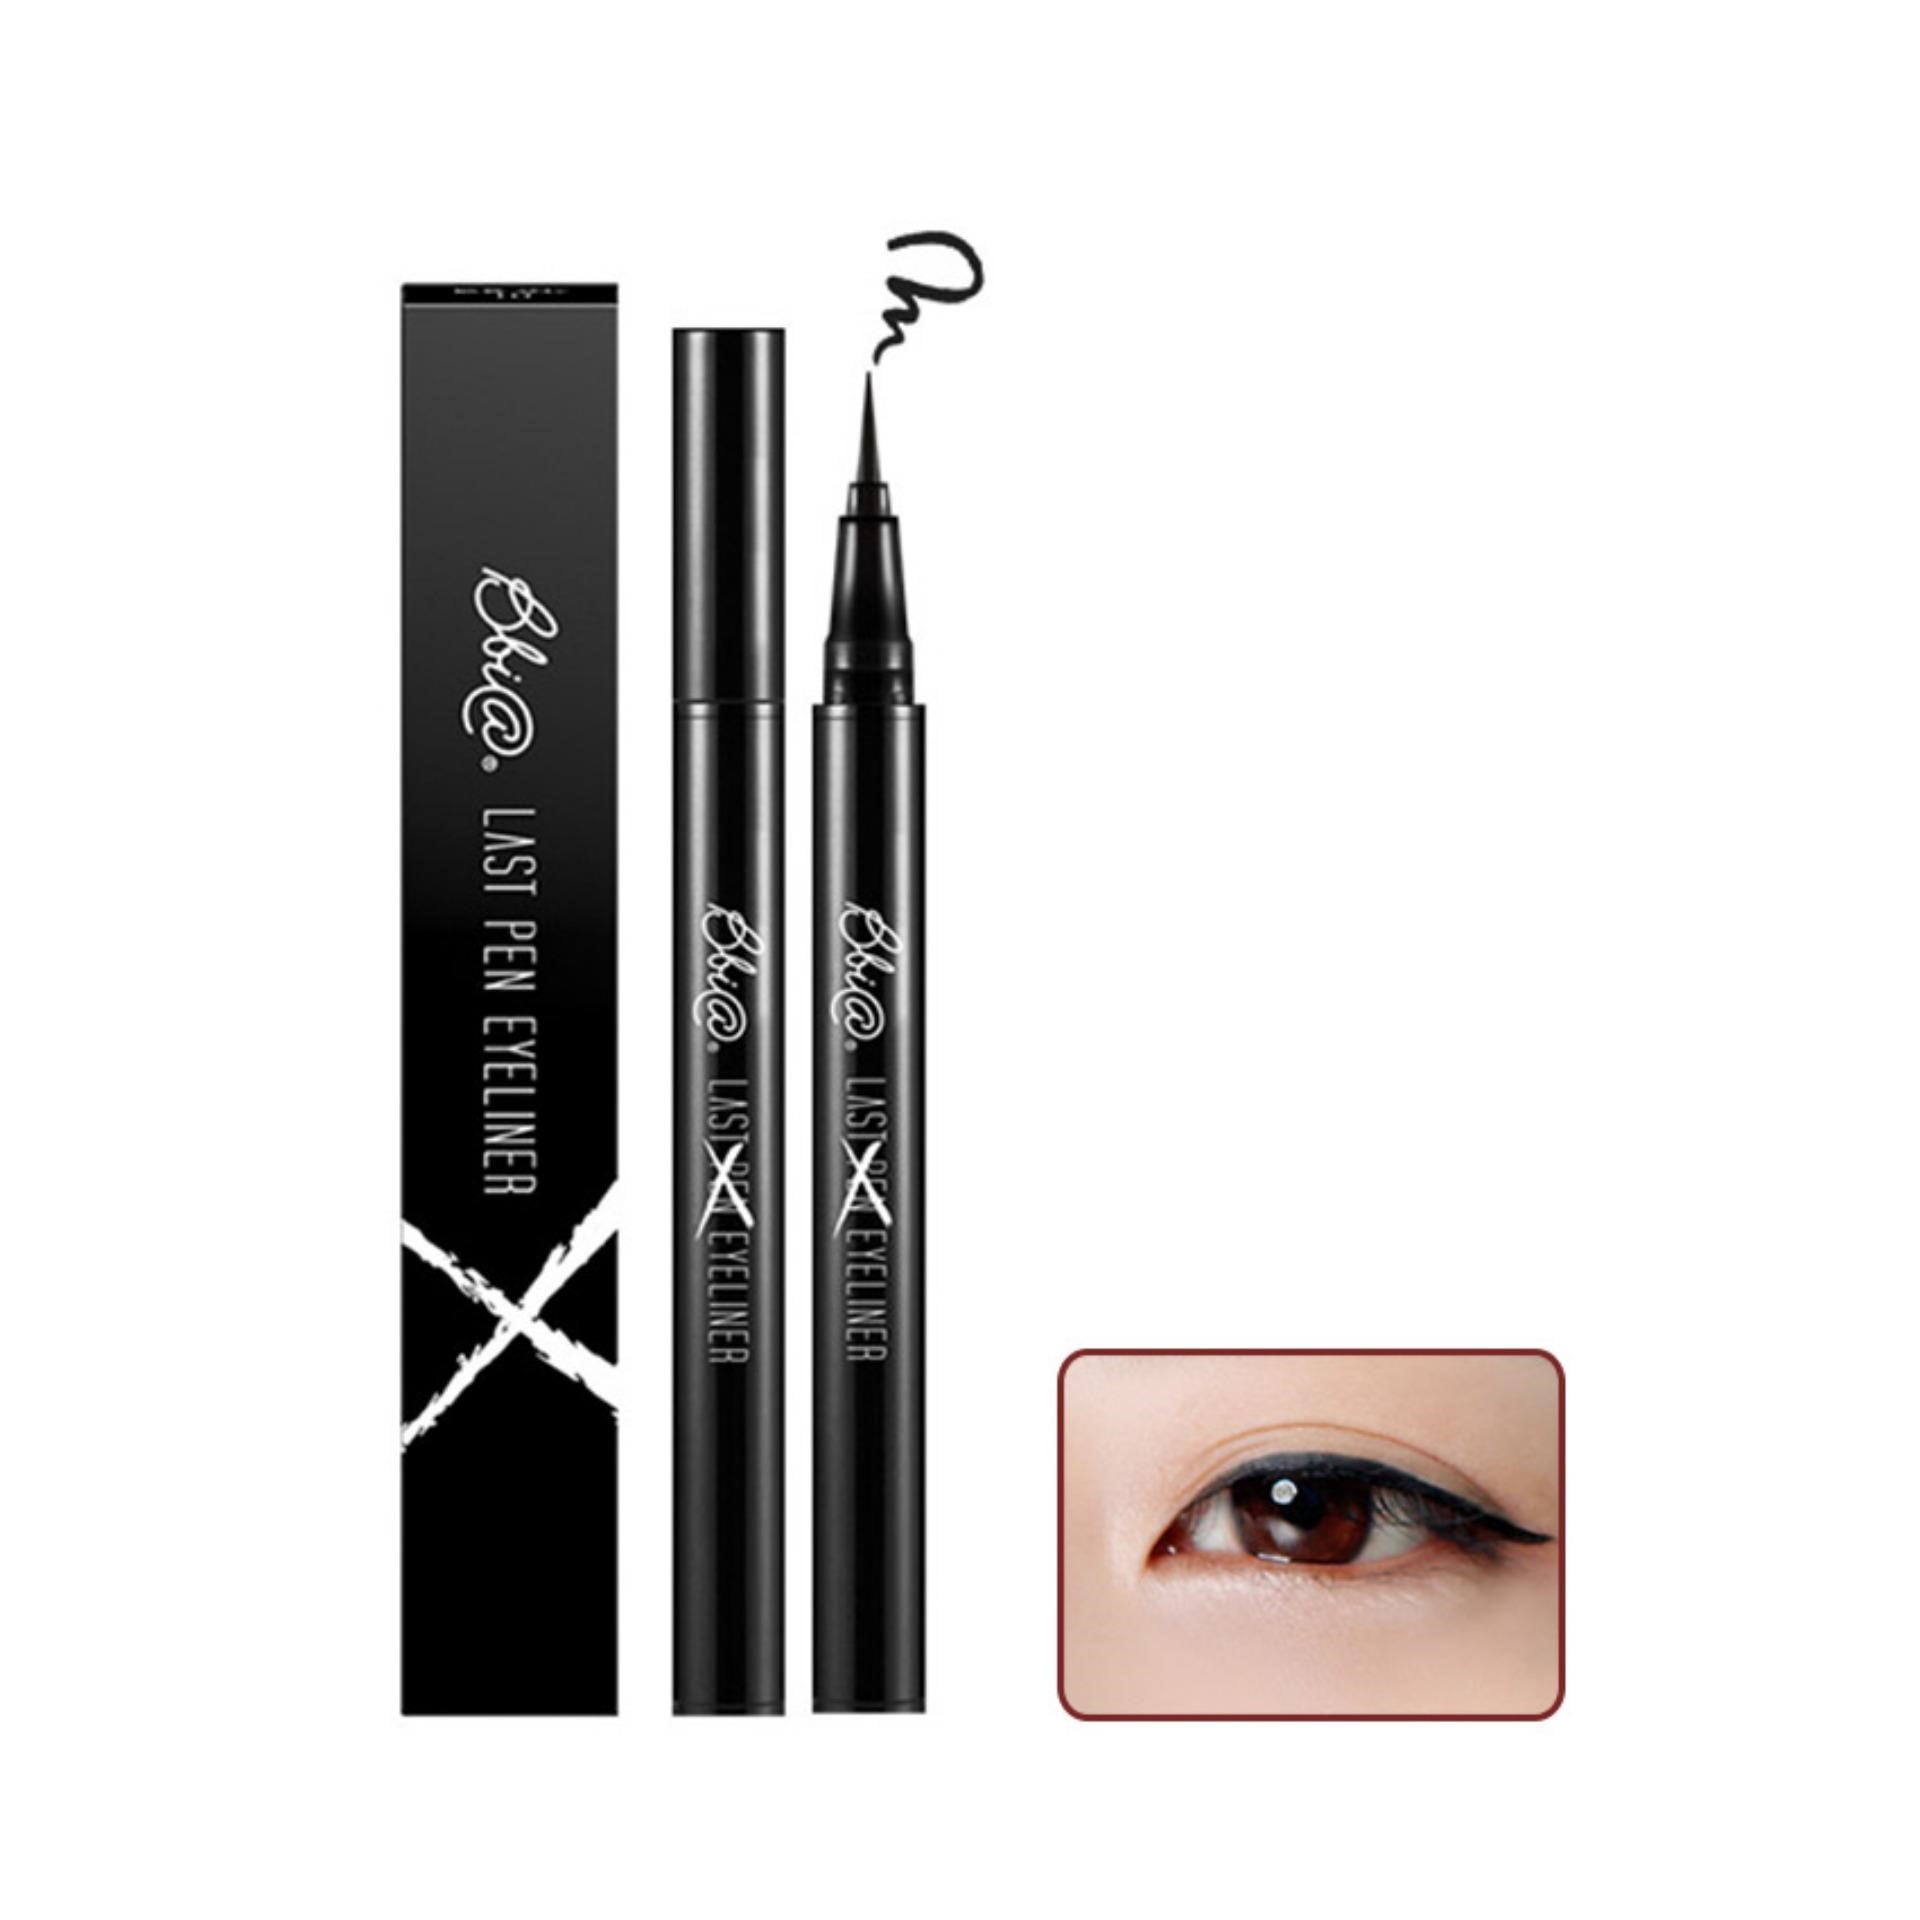 Bbia Last Pen Eyeliner (3 màu) 0.6g là eyeliner không trôi, lâu trôi có thiết kế đặc biệt cho đường kẻ sắc nét